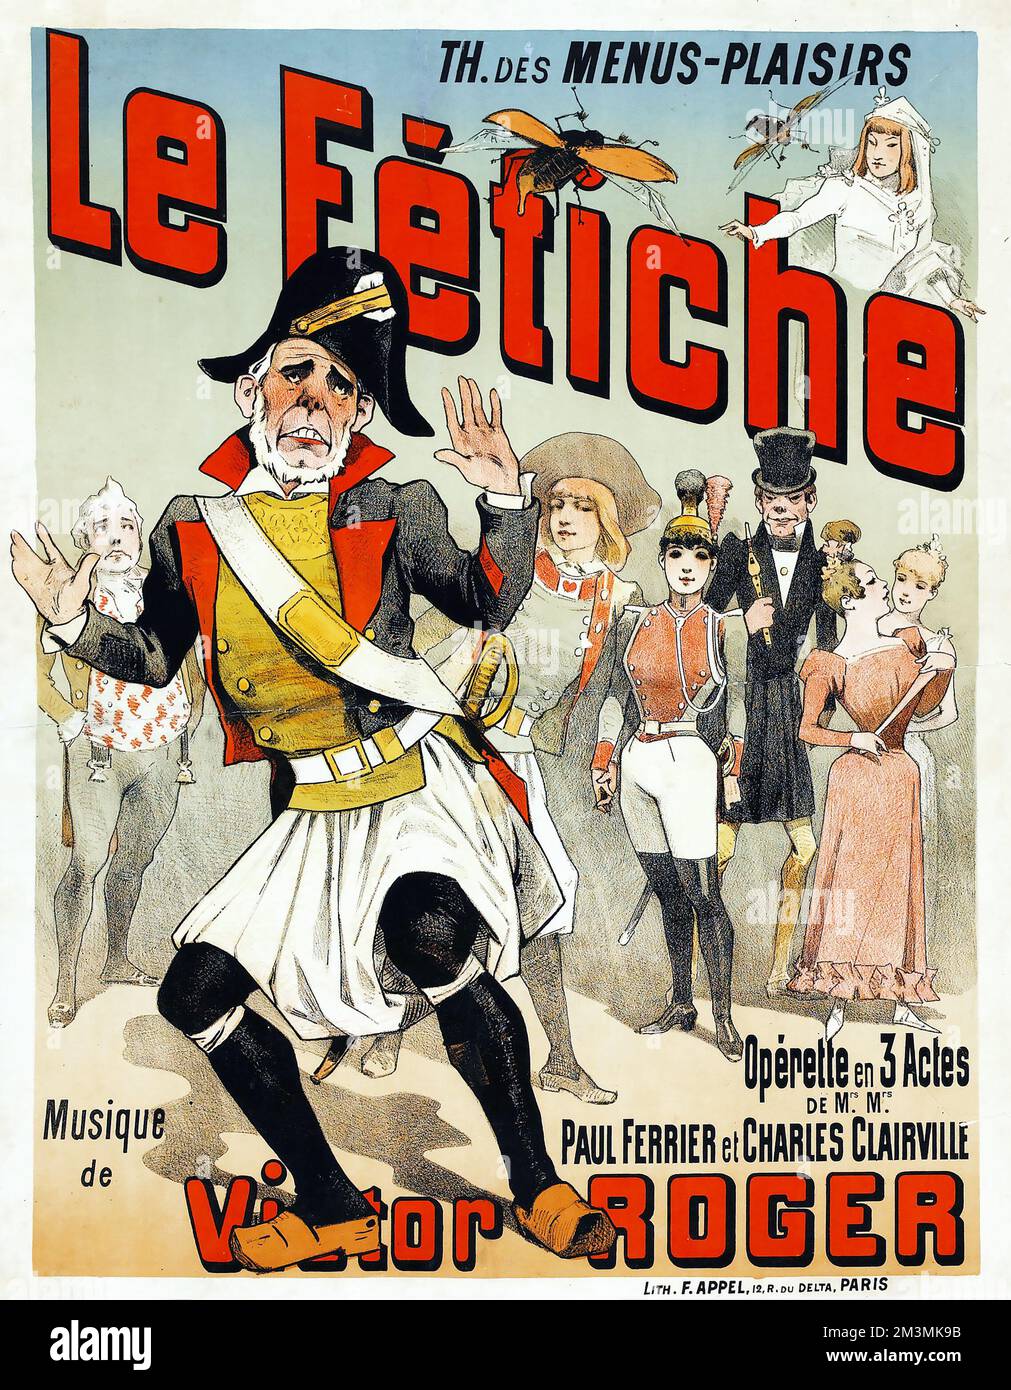 Le Fetiche (Theatre des Menus-Plaisirs (1890). Theatre Advertising Poster Stock Photo